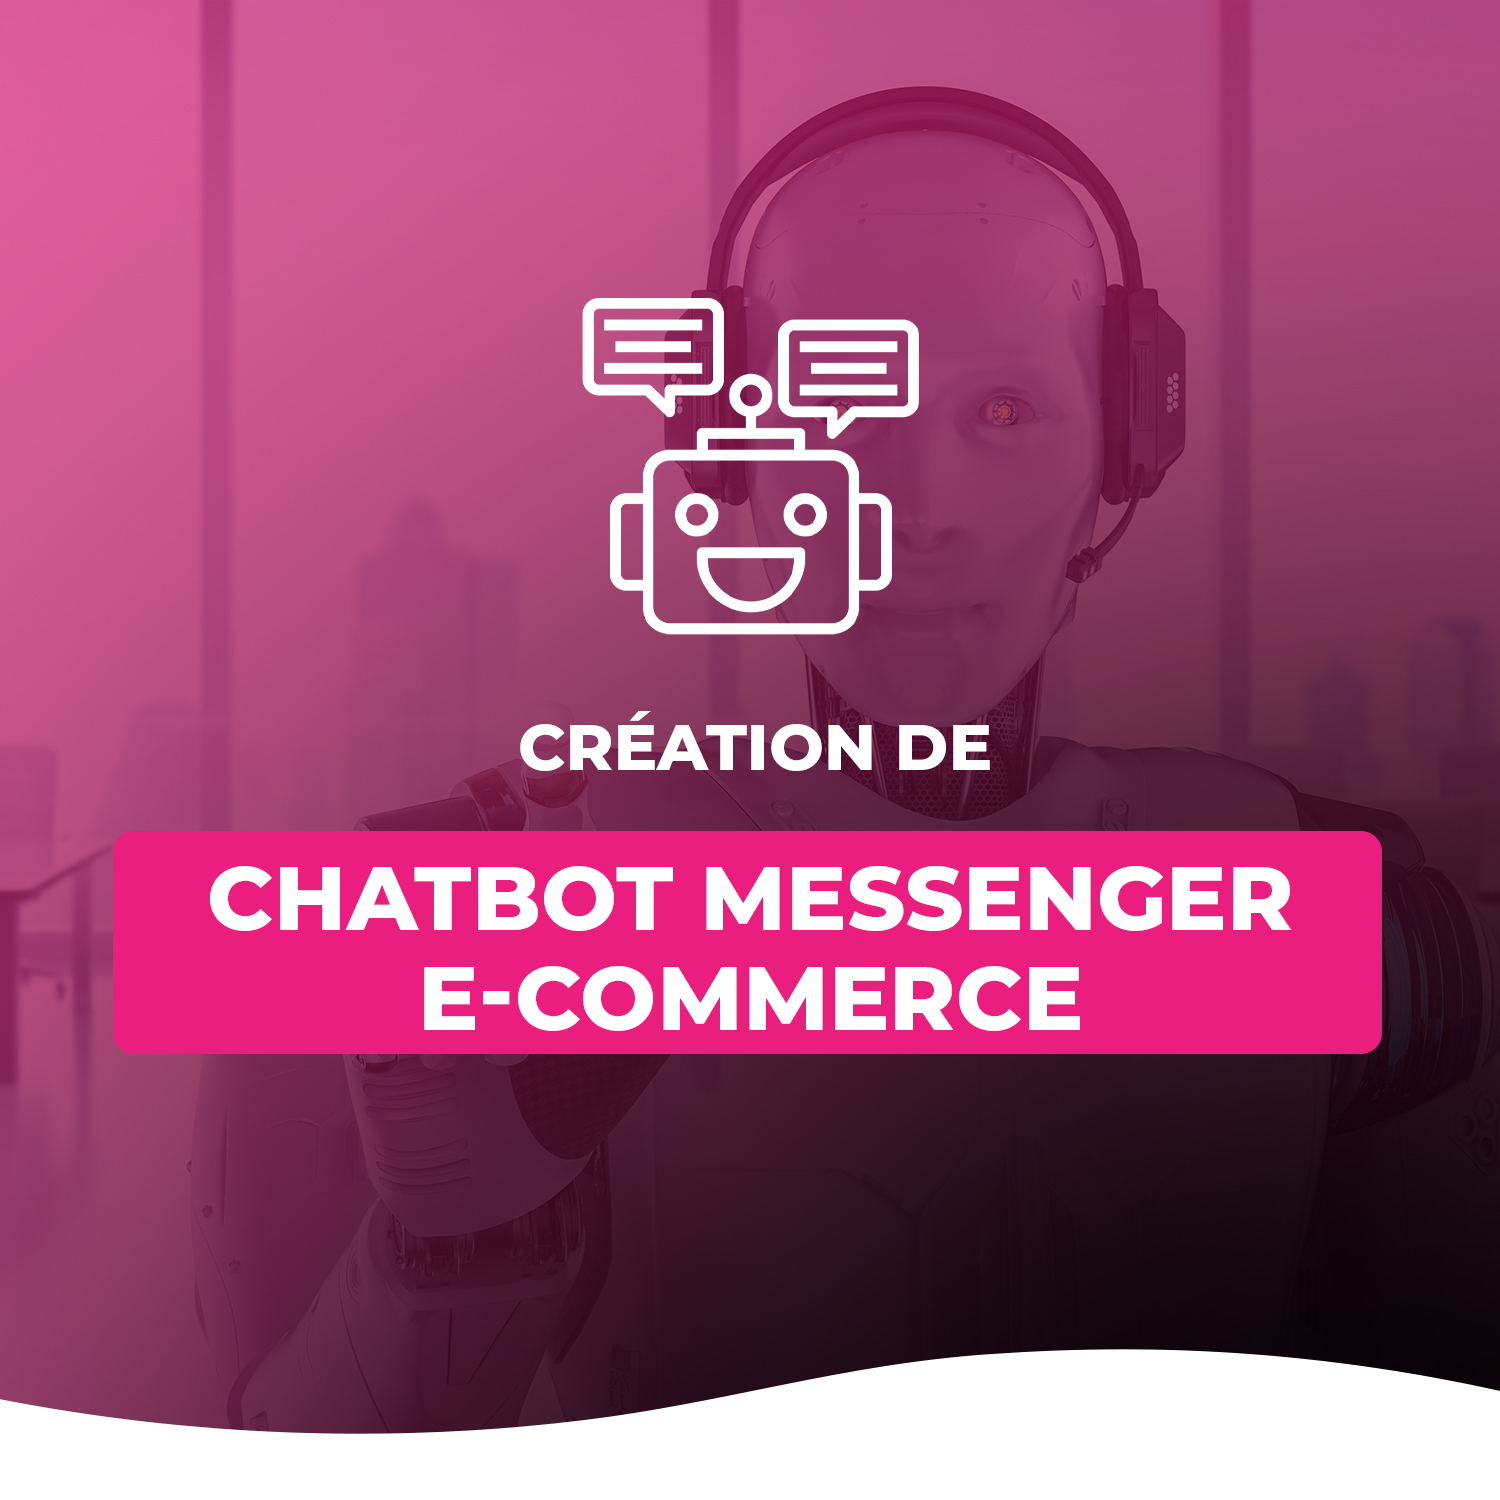 Création De Chatbot Messenger E-commerce